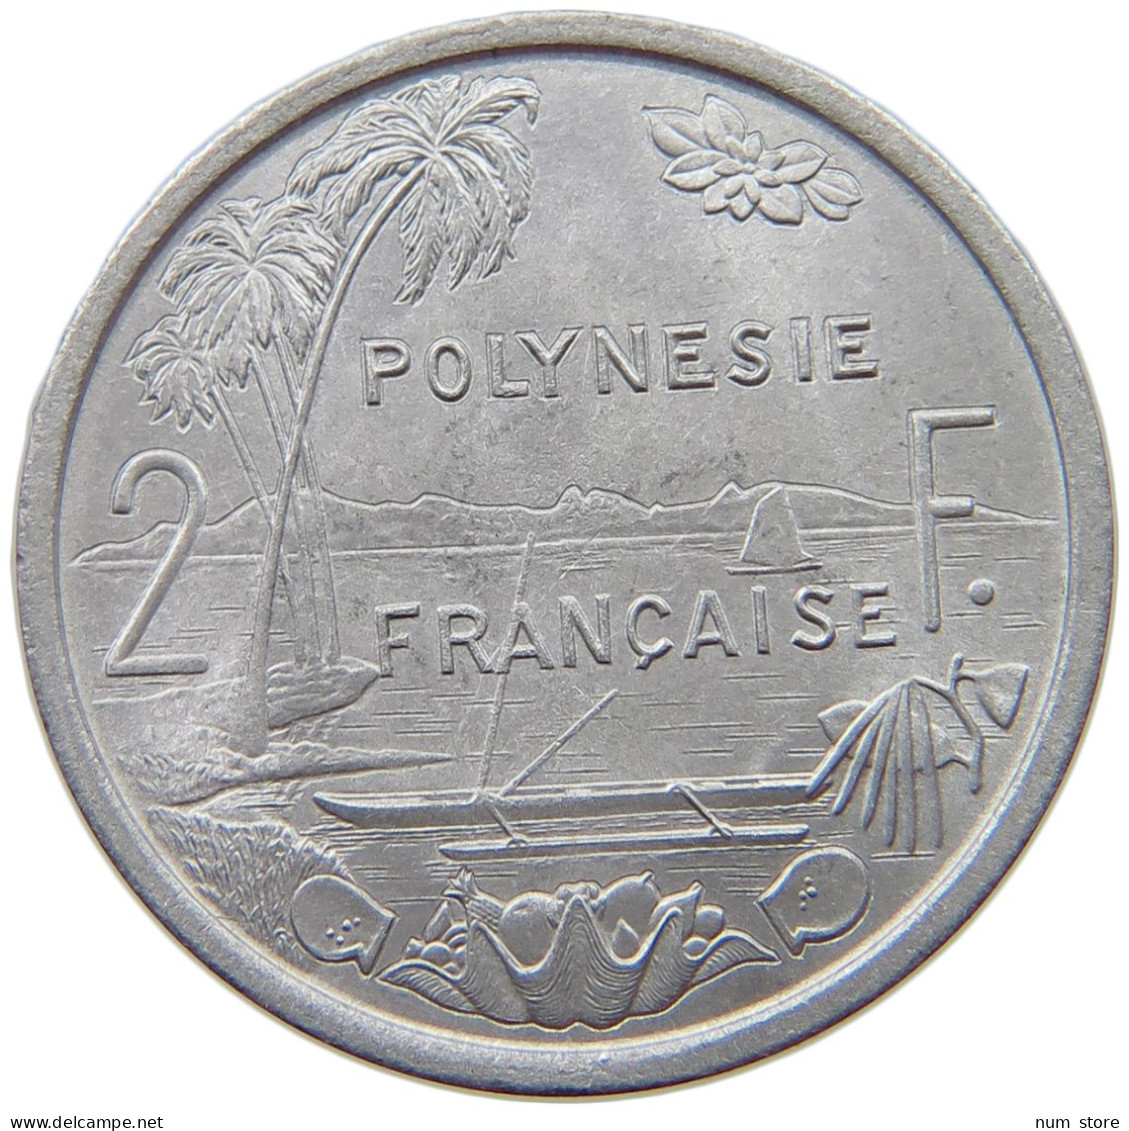 POLYNESIA 2 FRANCS 1973  #a022 0159 - French Polynesia